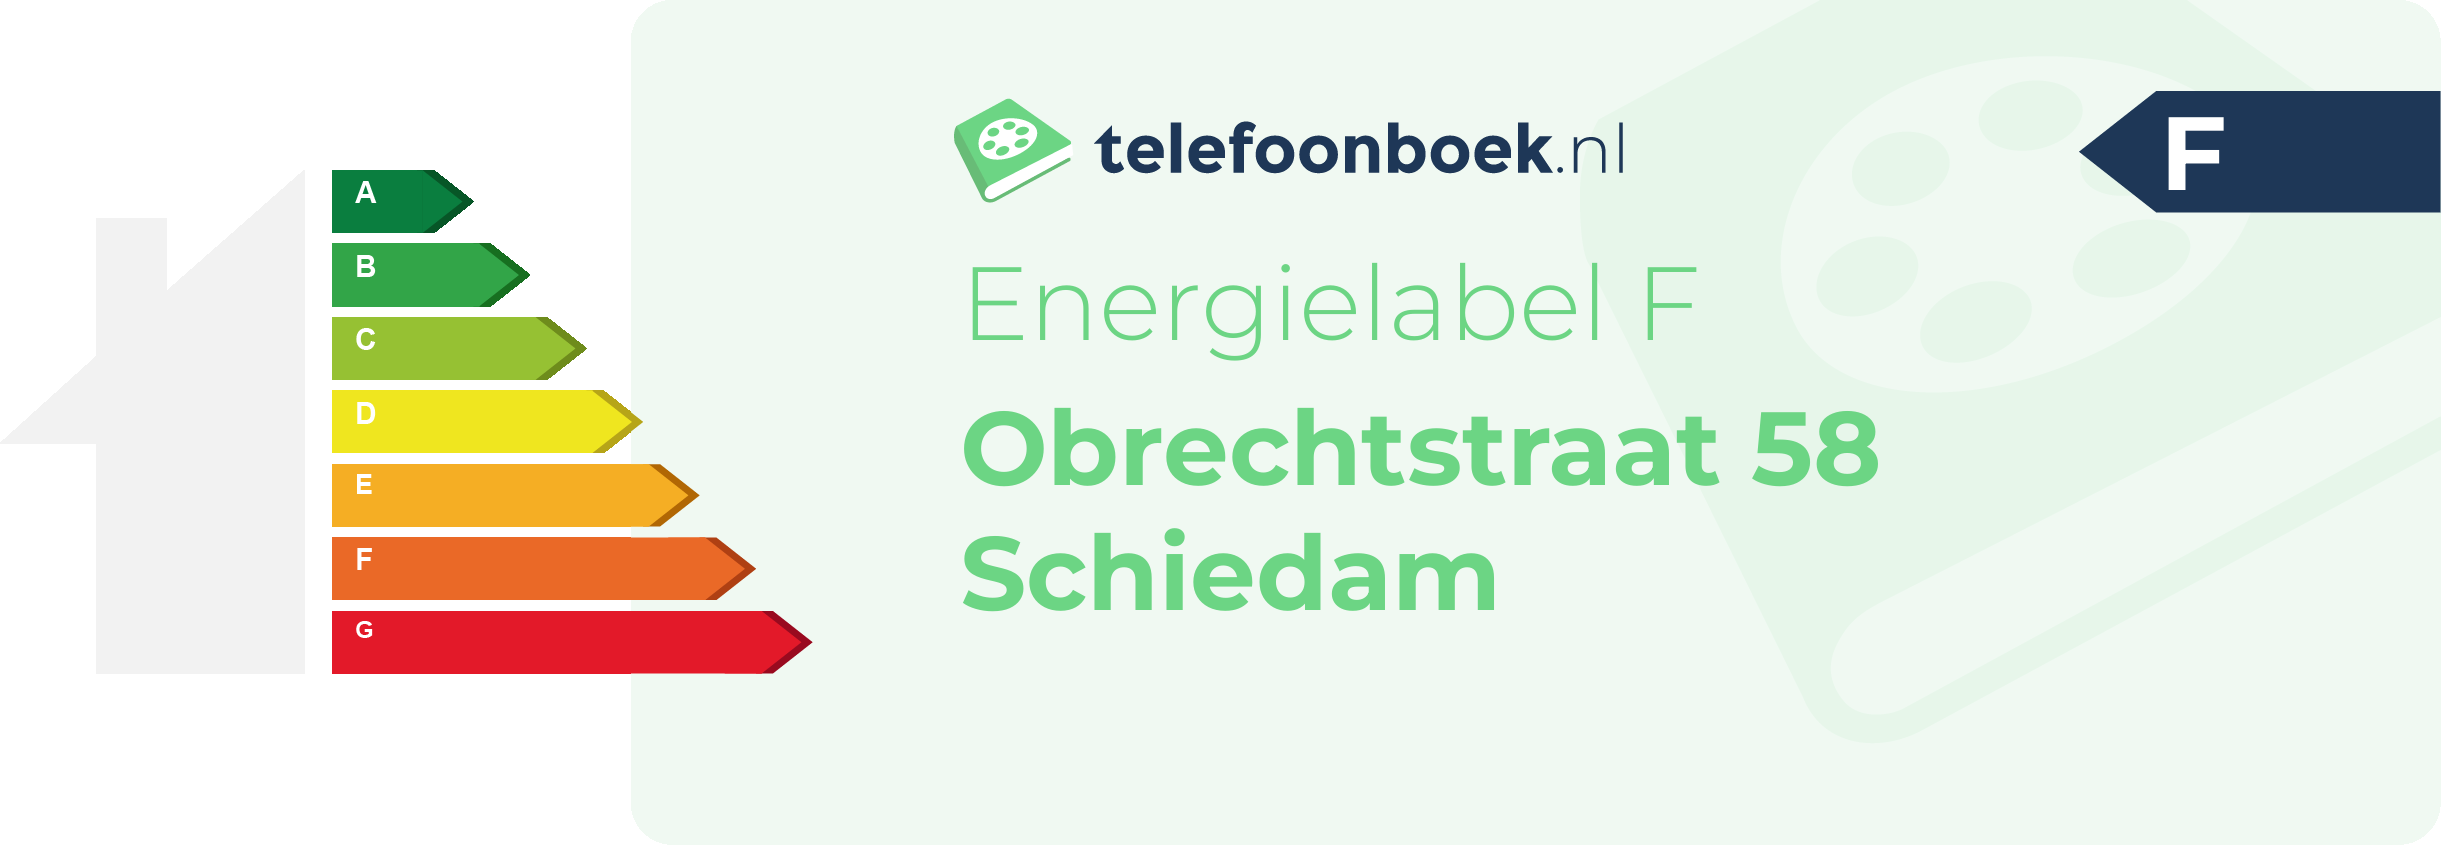 Energielabel Obrechtstraat 58 Schiedam